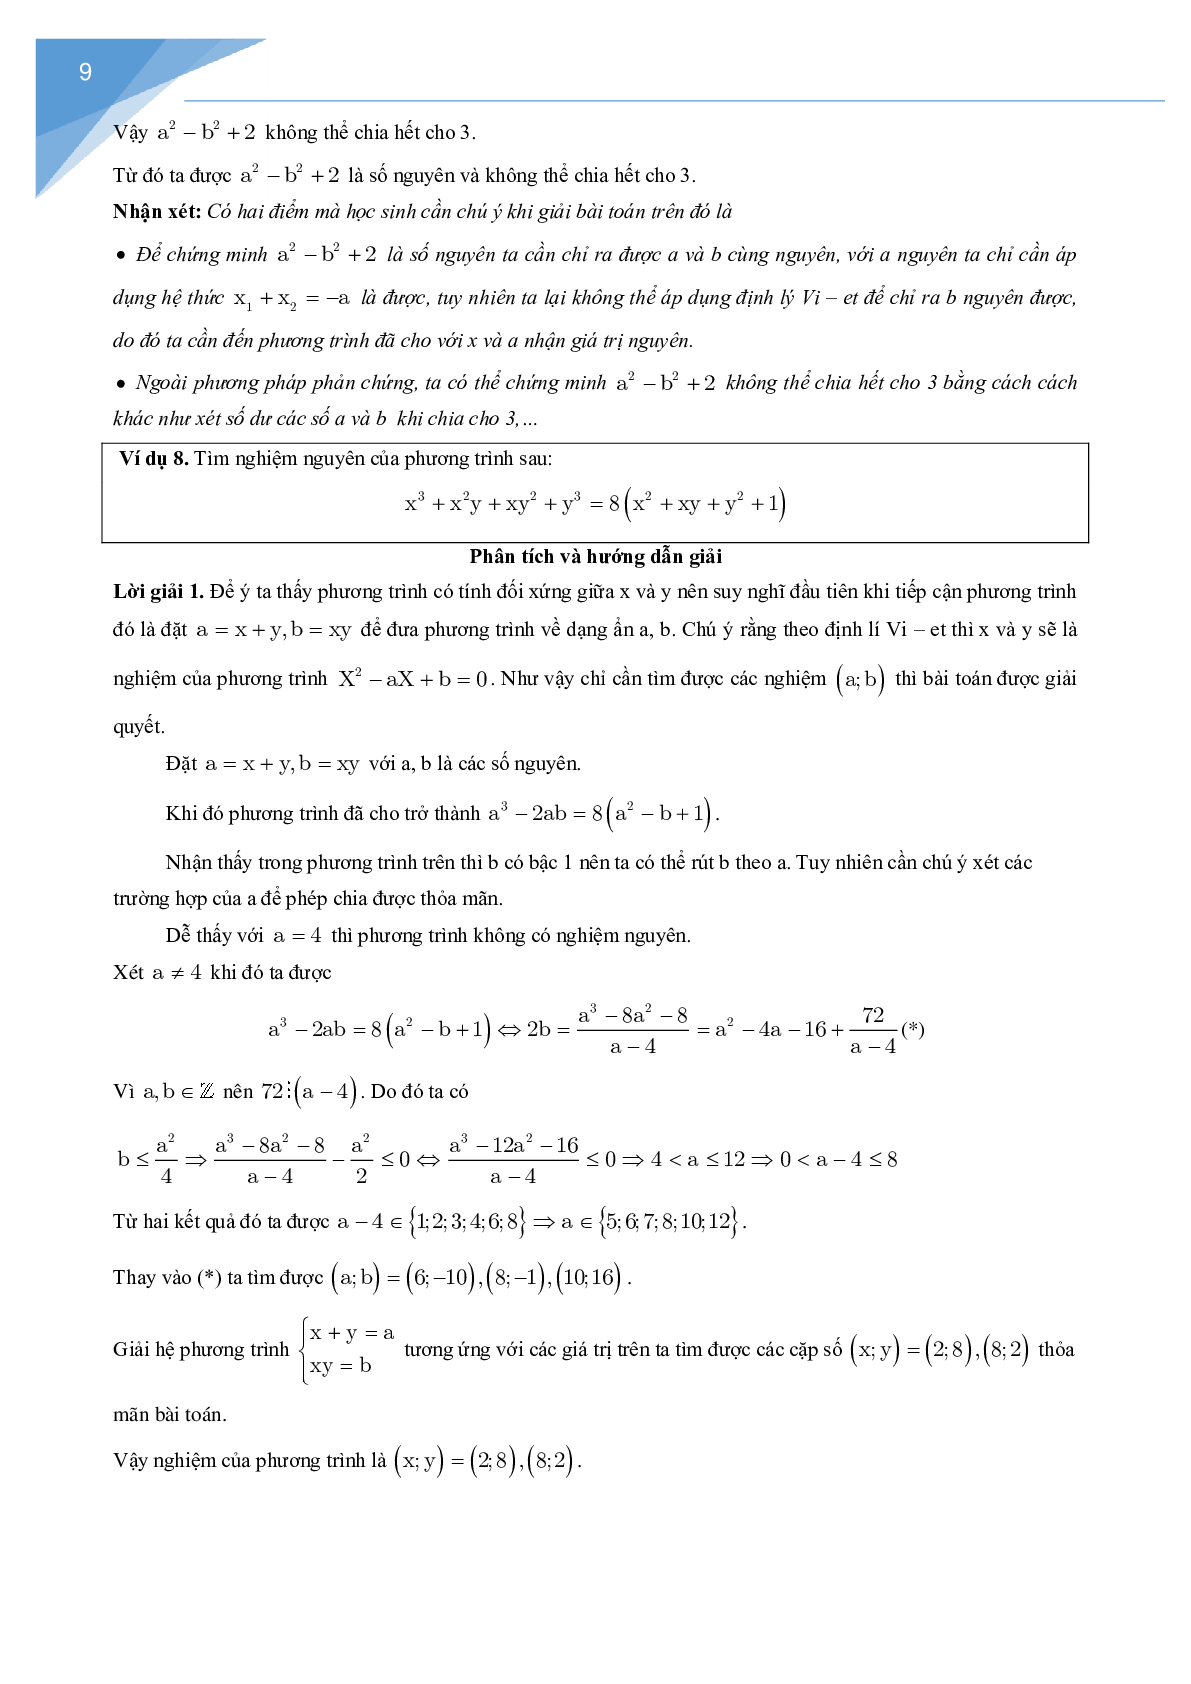 Vận dụng định lý Vi-et giải một số bài toán số học (trang 9)